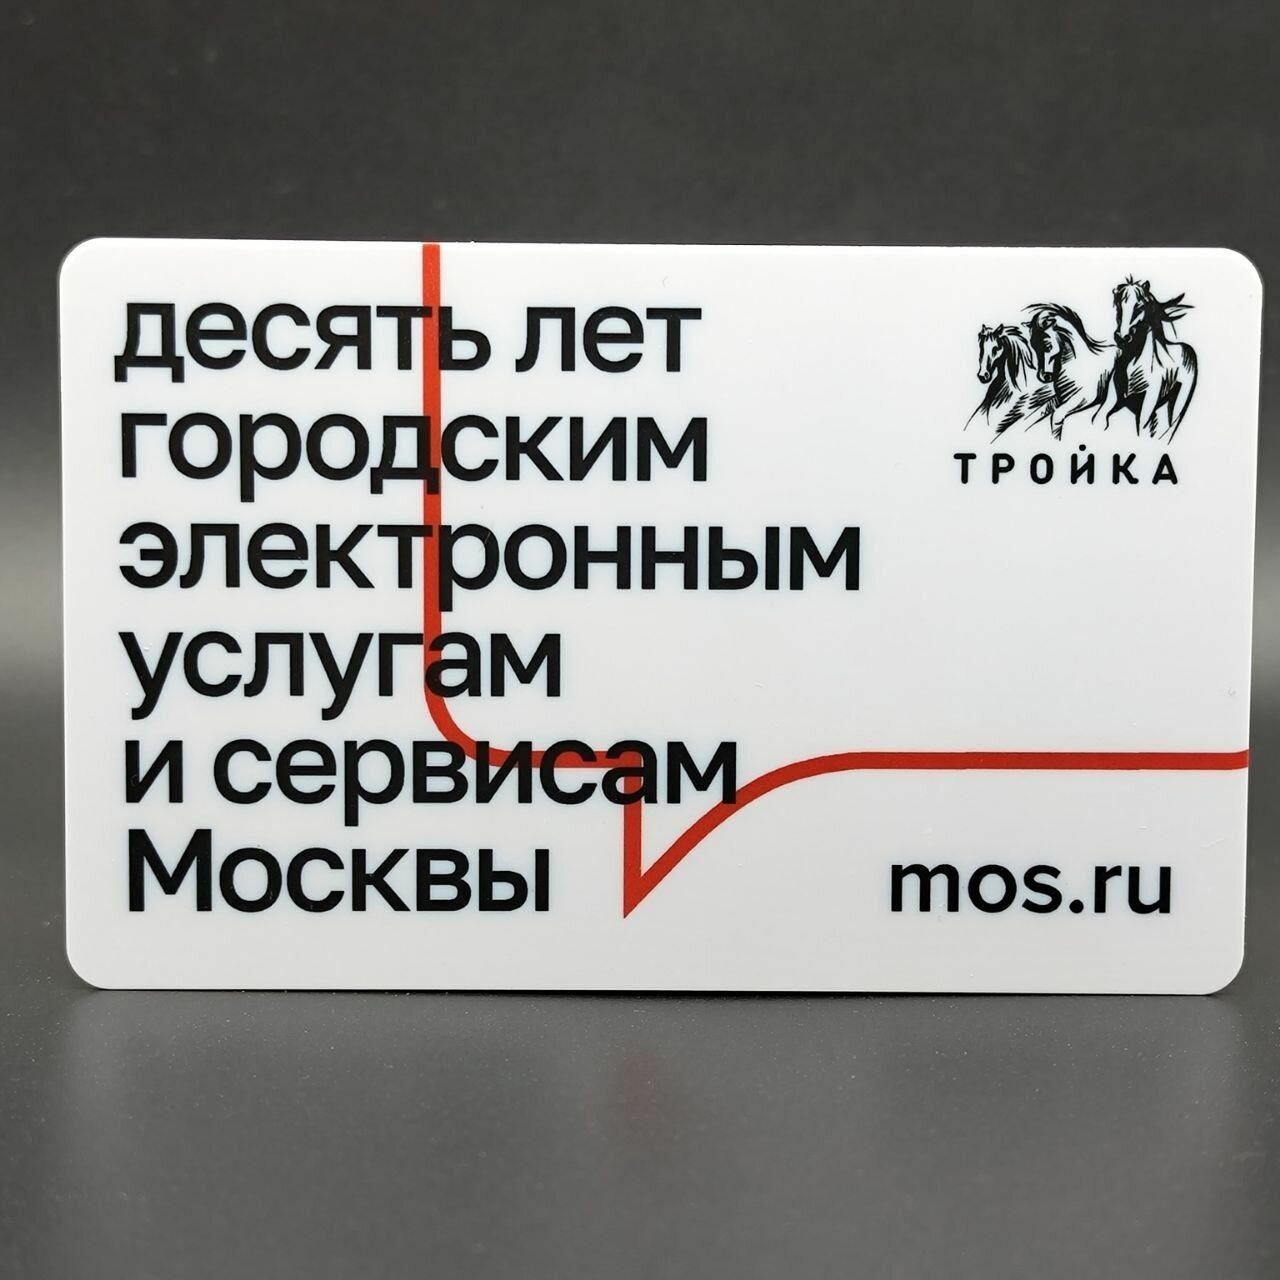 Транспортная карта метро Тройка - 10 лет городским электронным услугам и сервисам Москвы. Госуслуги 2021 (белая)